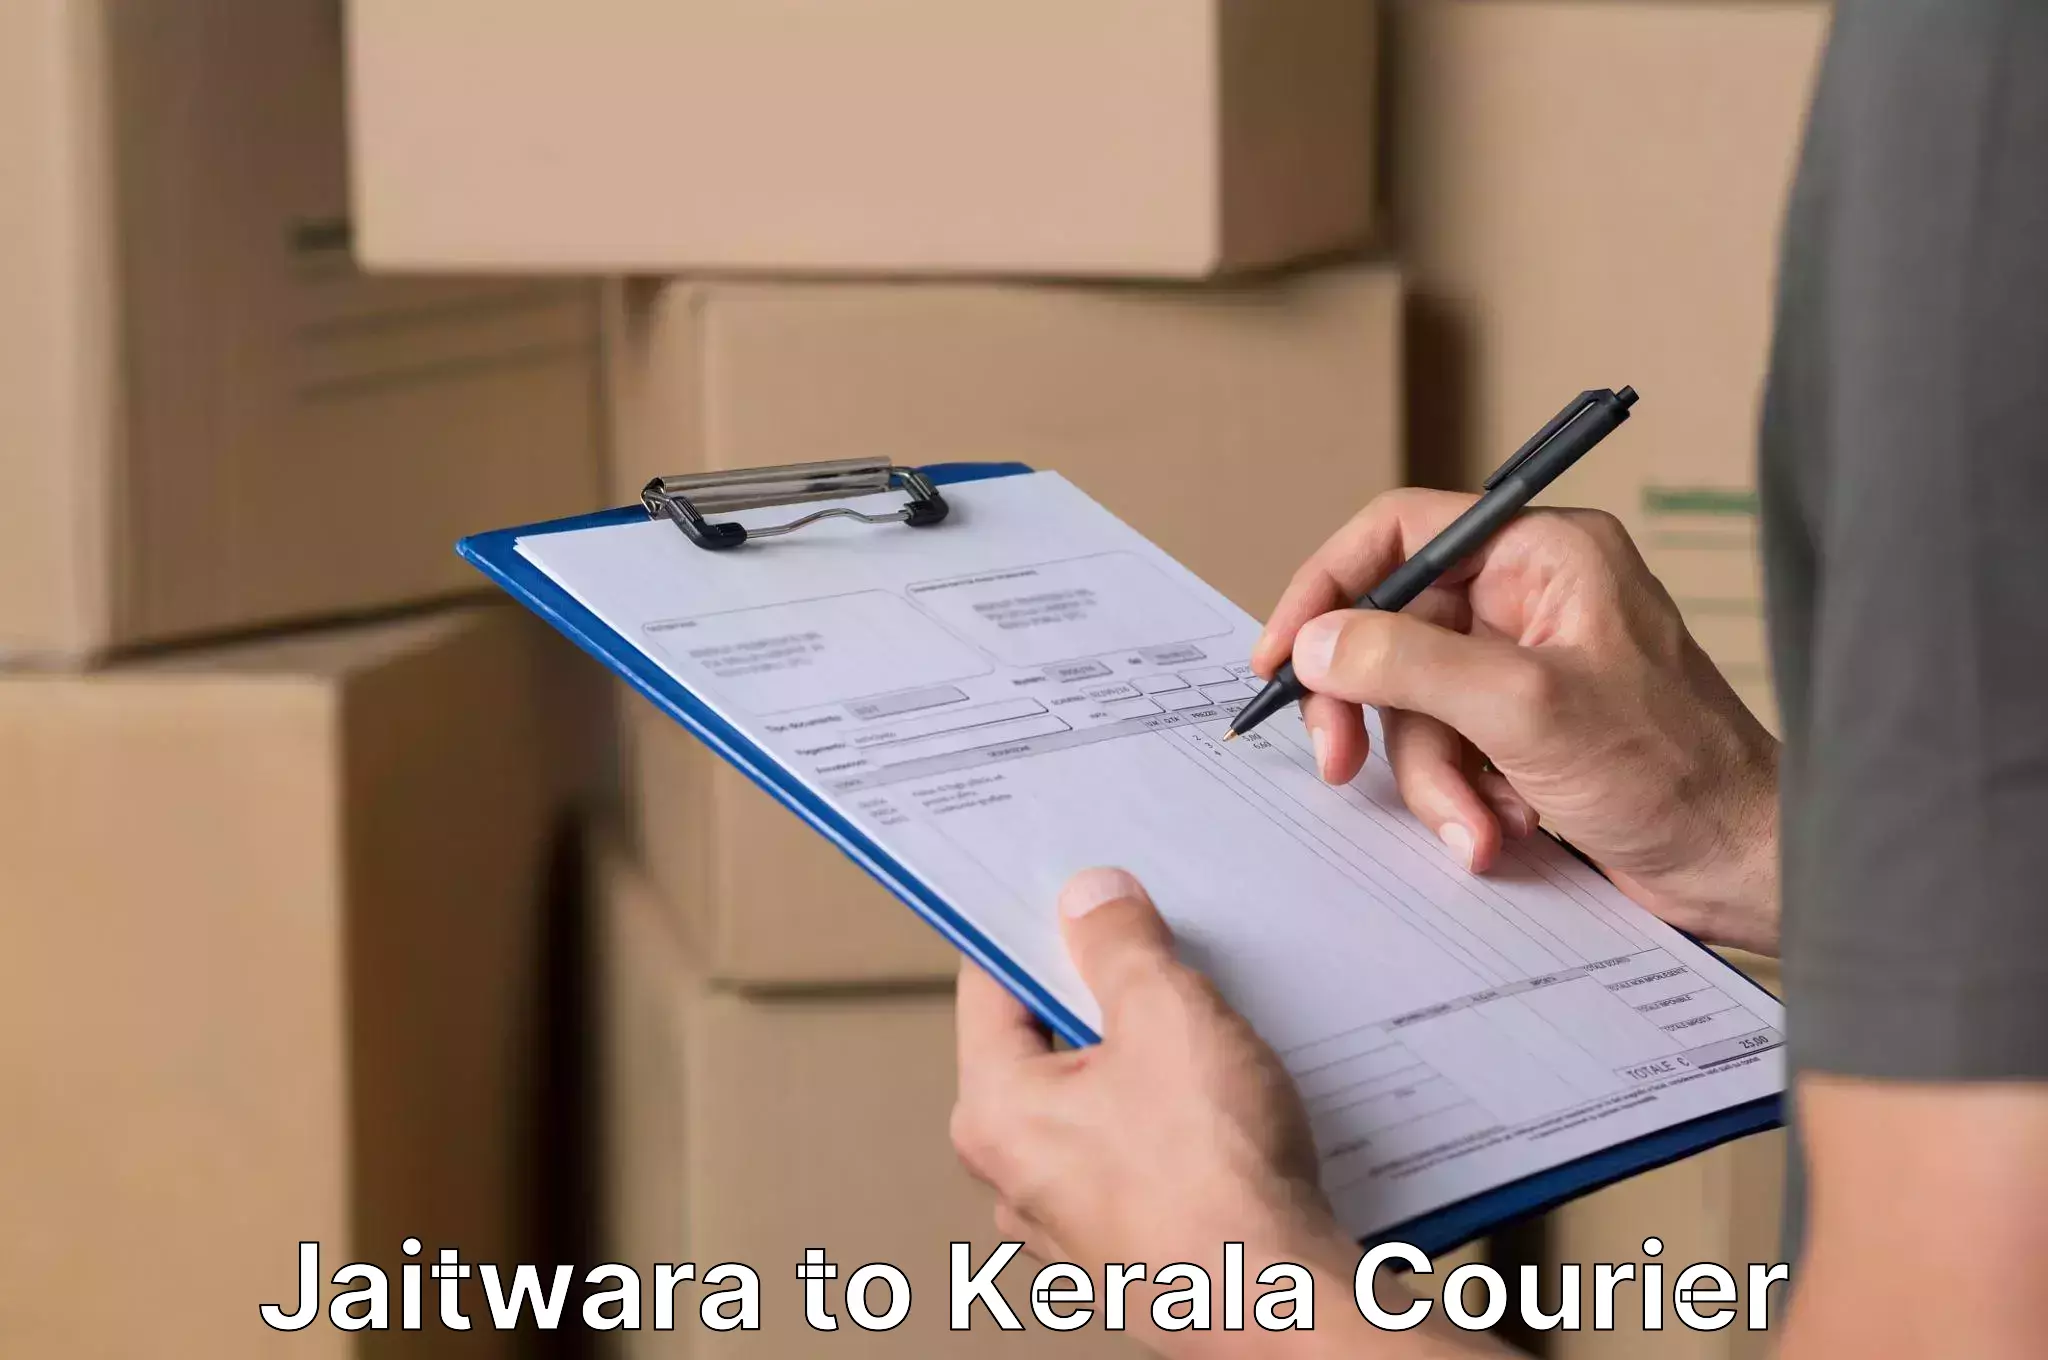 Efficient relocation services Jaitwara to Thrissur